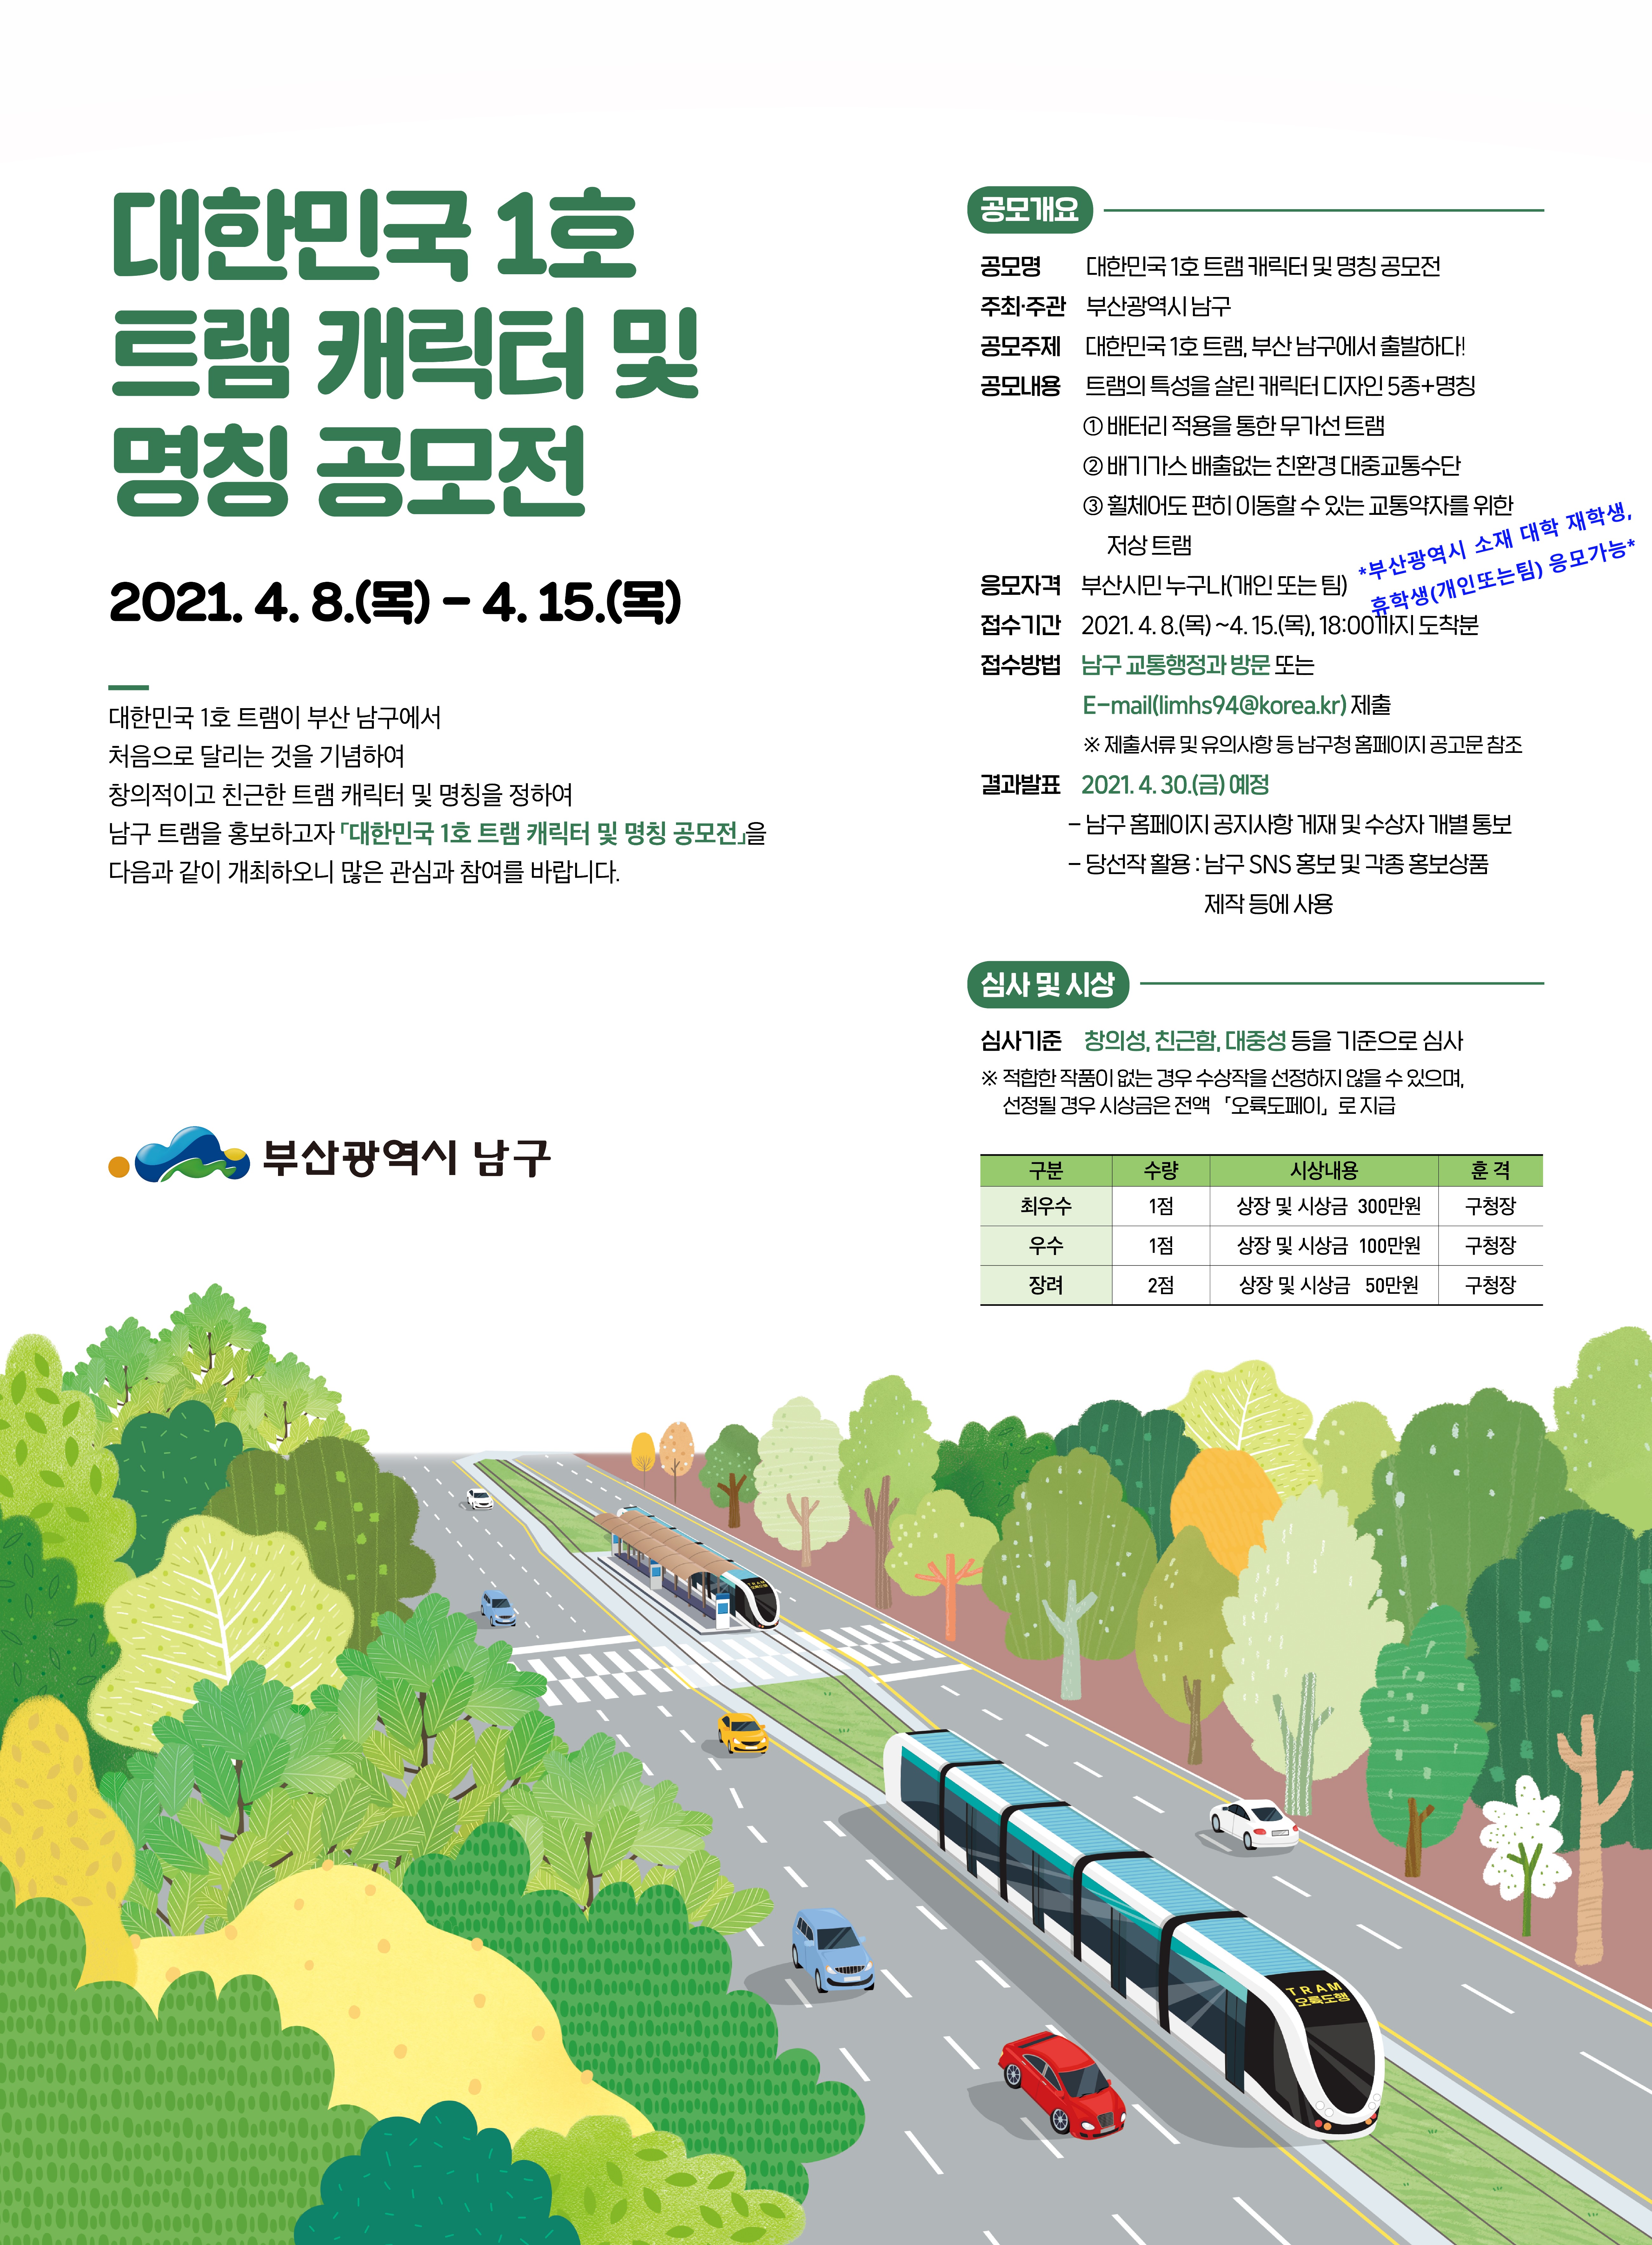 『대한민국 1호 트램 캐릭터 및 명칭 공모전』